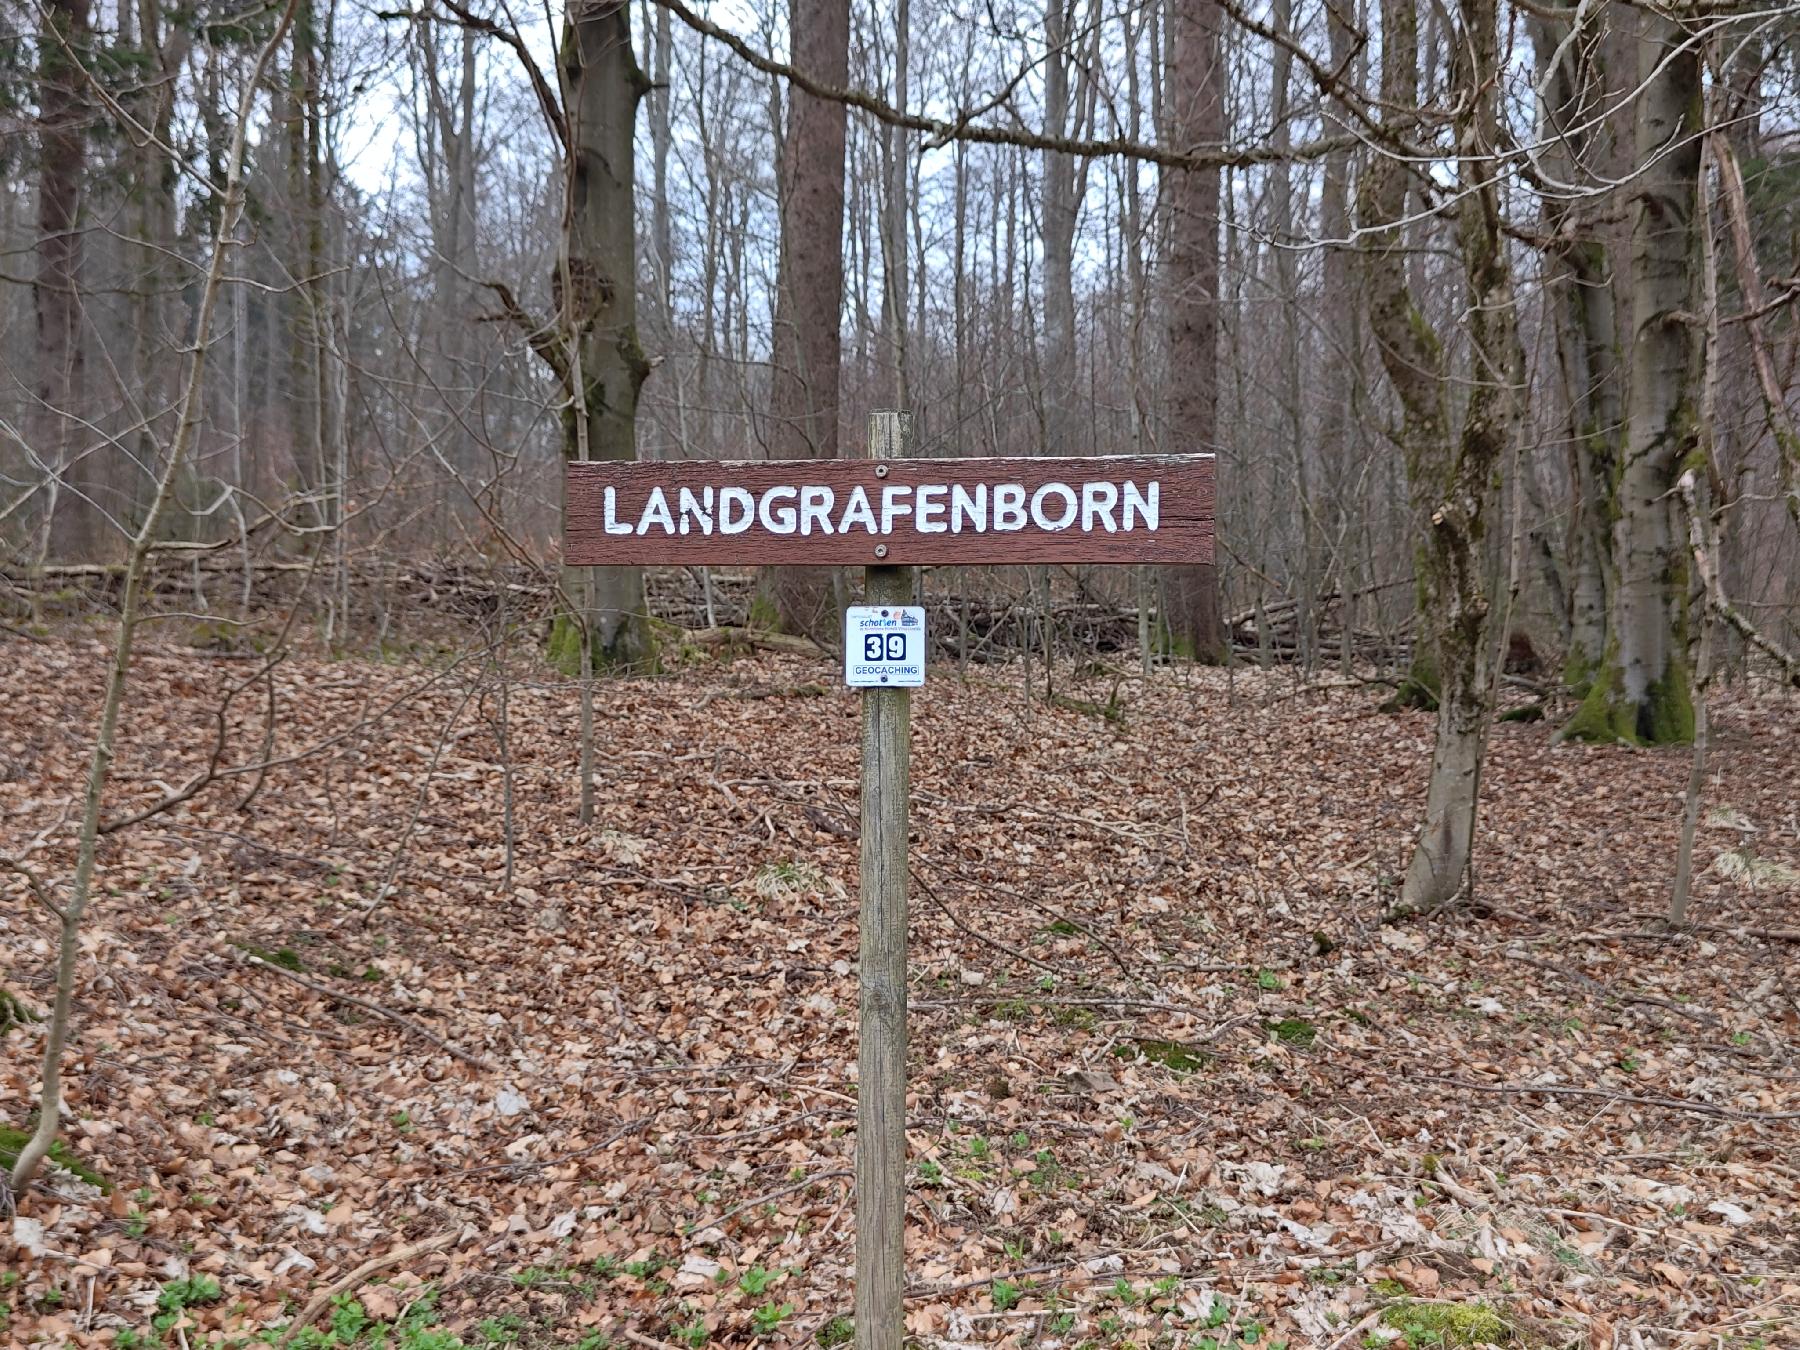 Quelle Landgrafenborn in Schotten-Breungeshain